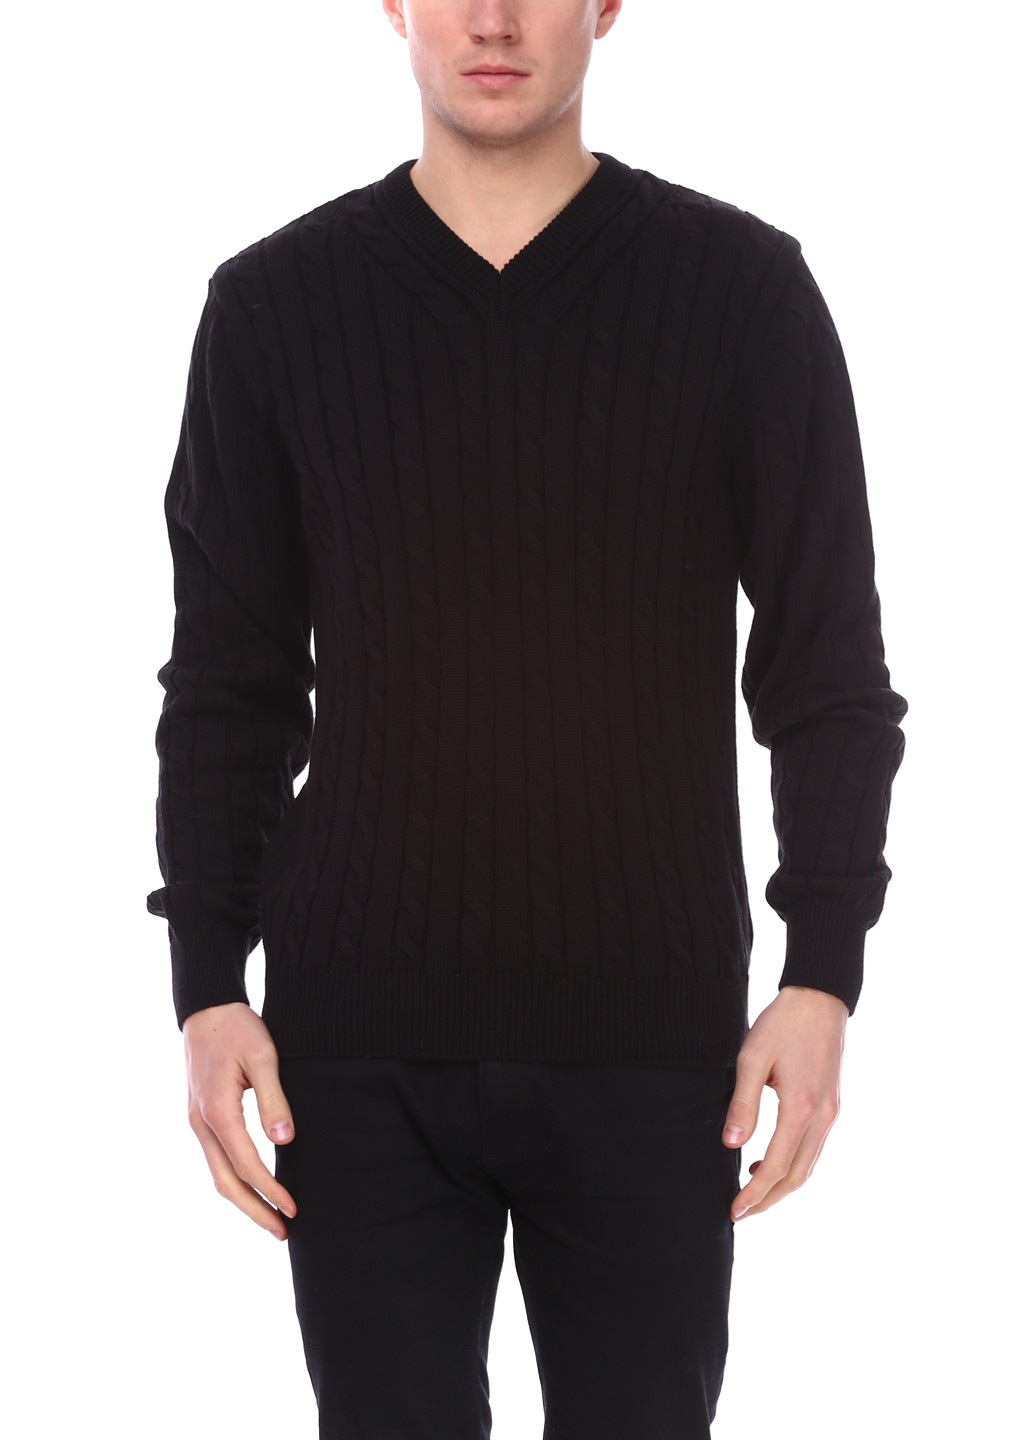 Черный демисезонный пуловер пуловер Le Gutti